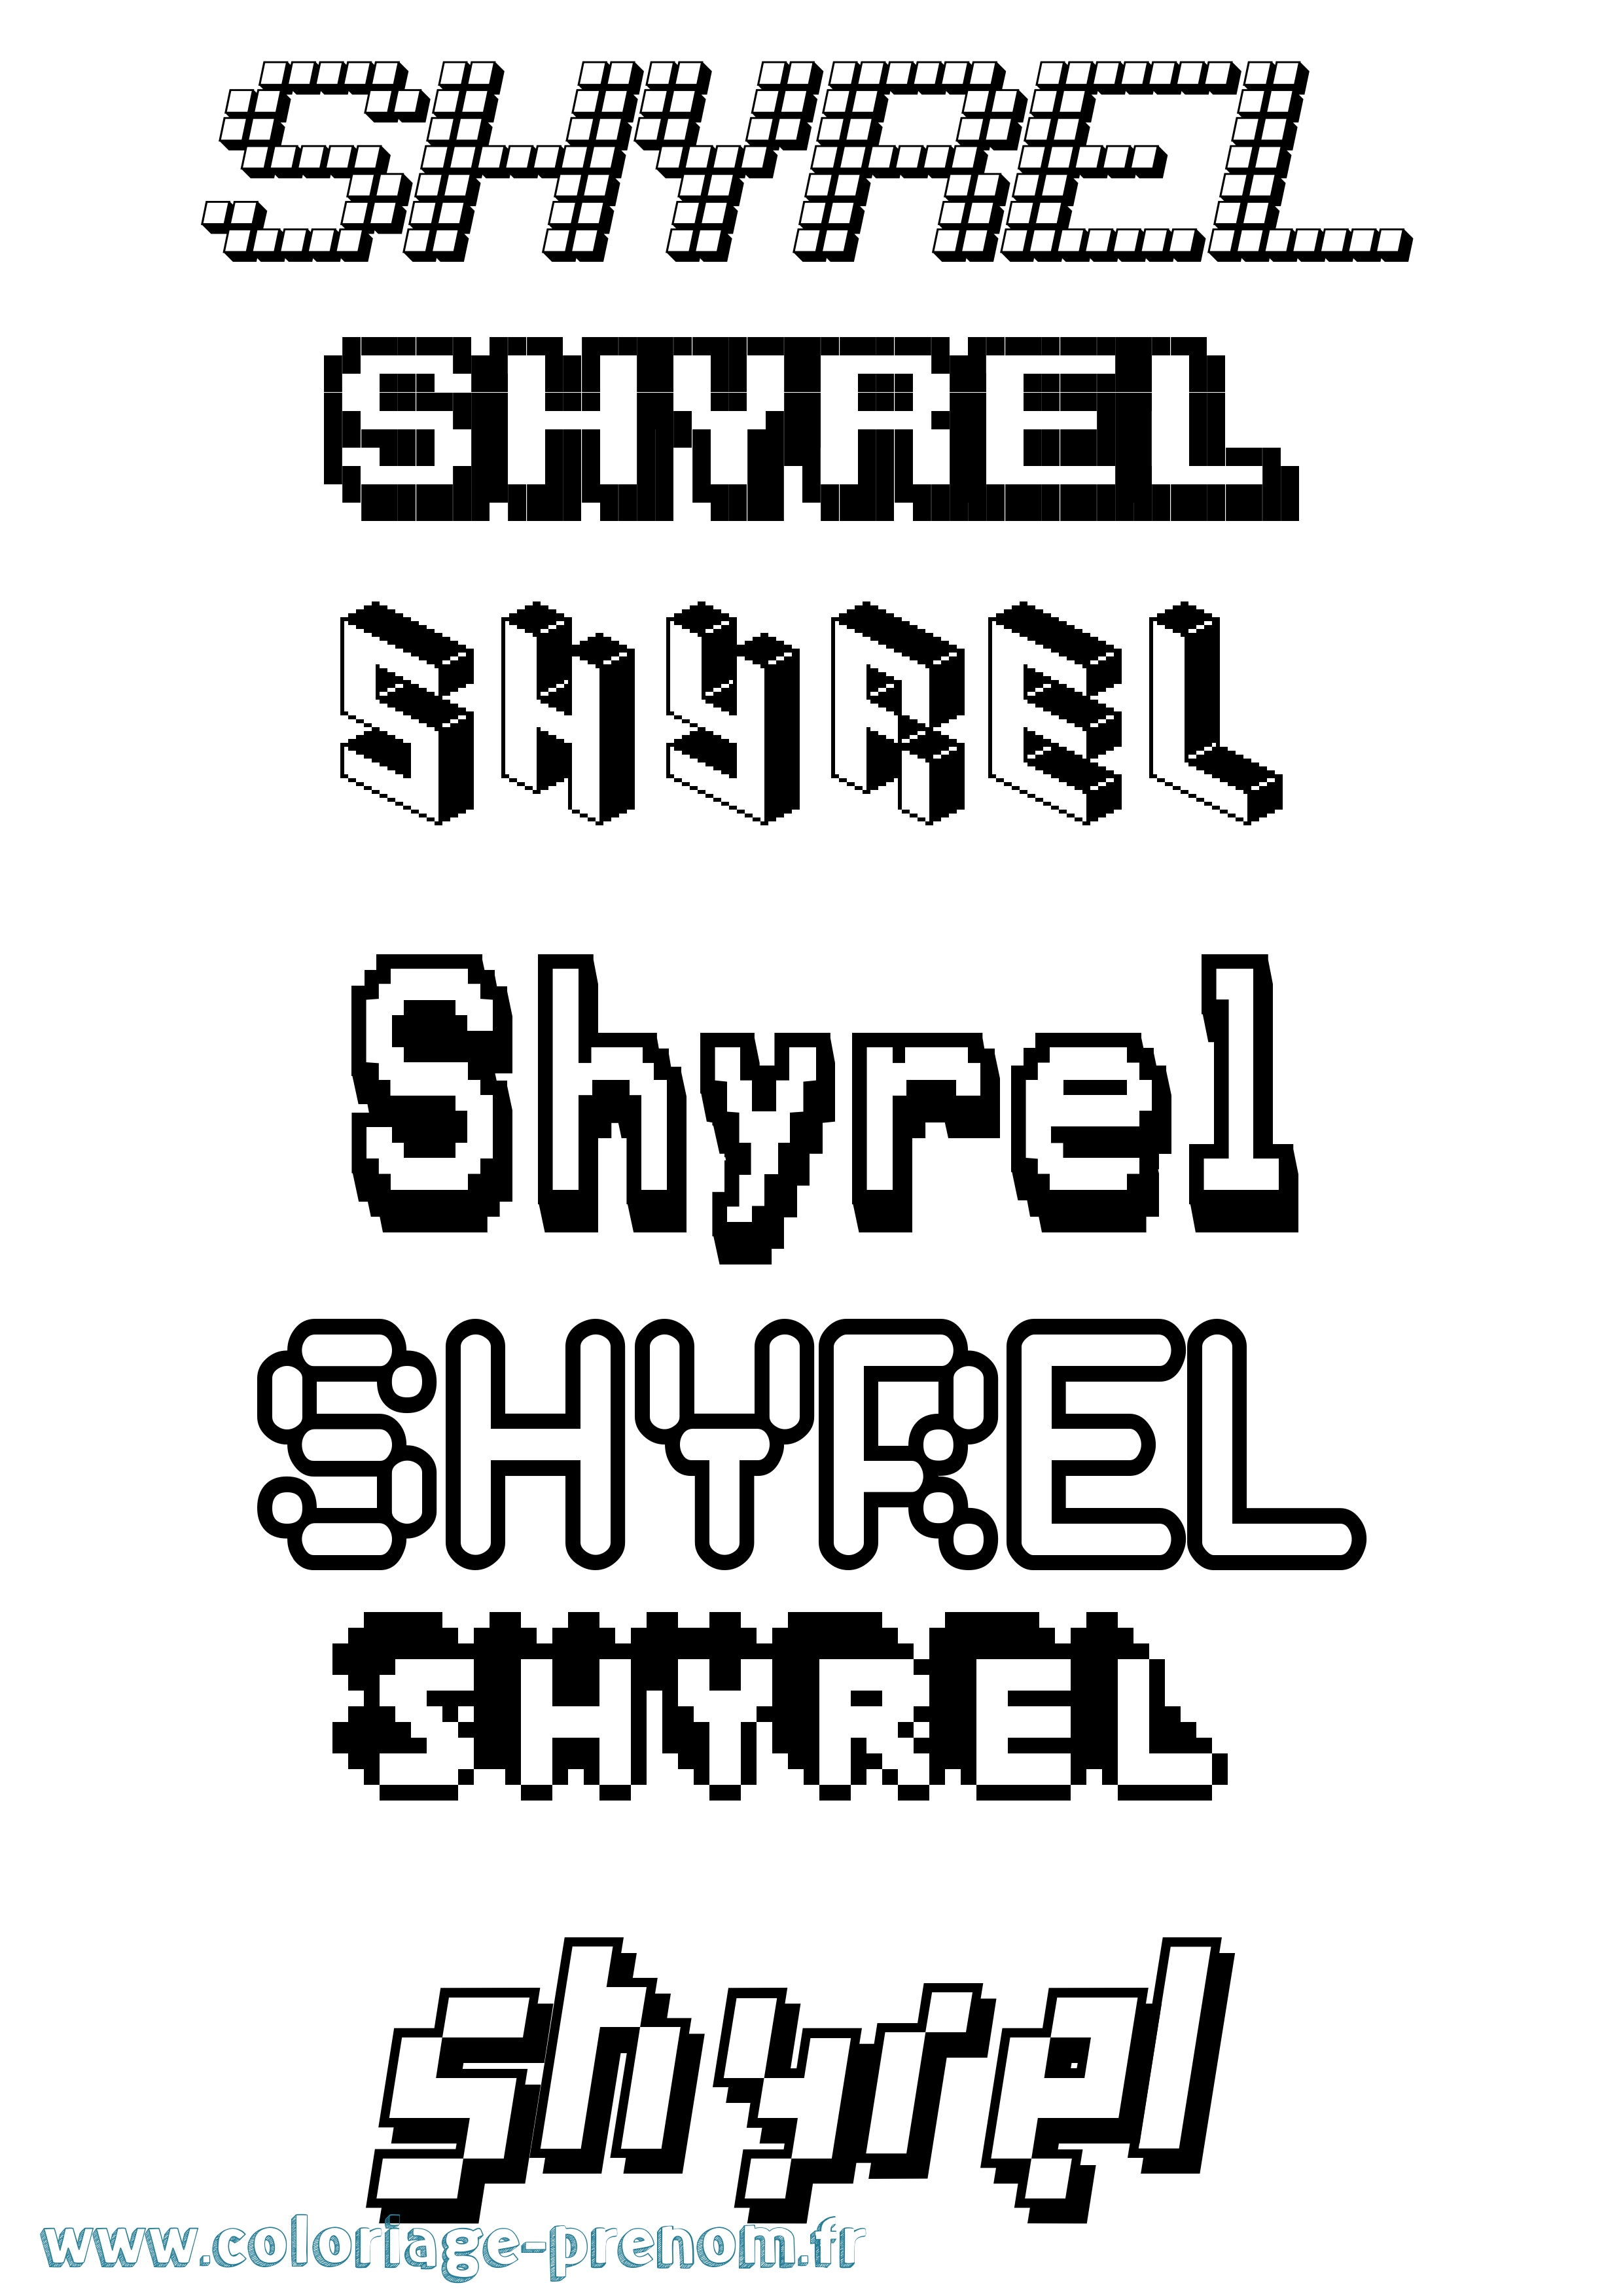 Coloriage prénom Shyrel